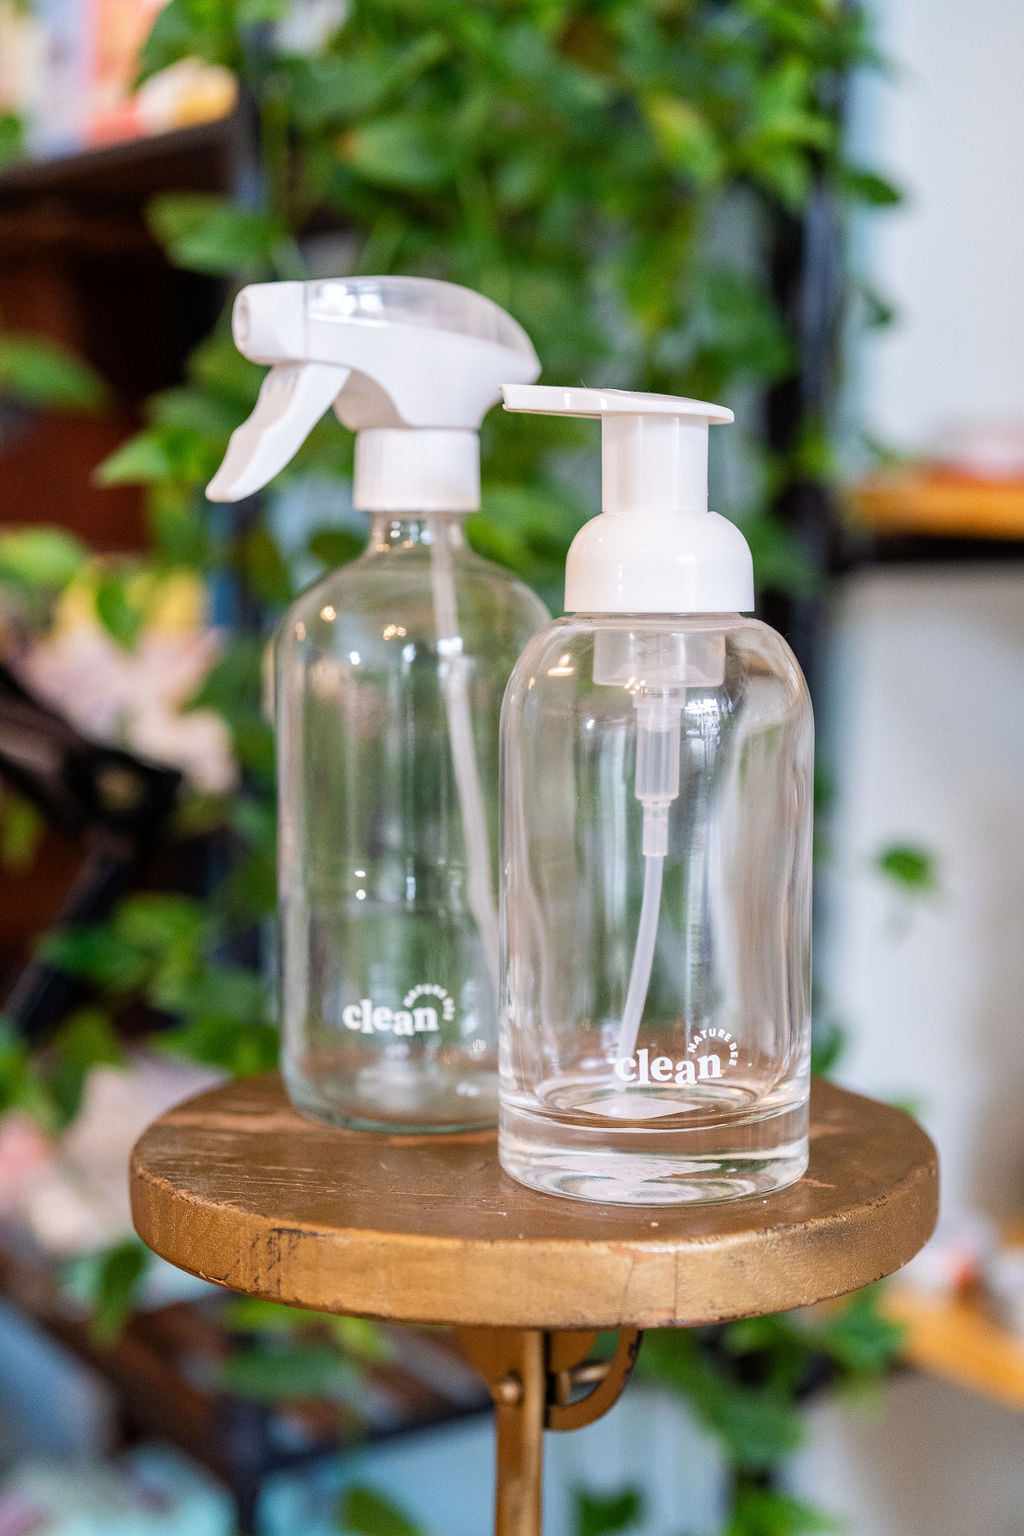 Glass Cleaner & Hand Soap Bottles